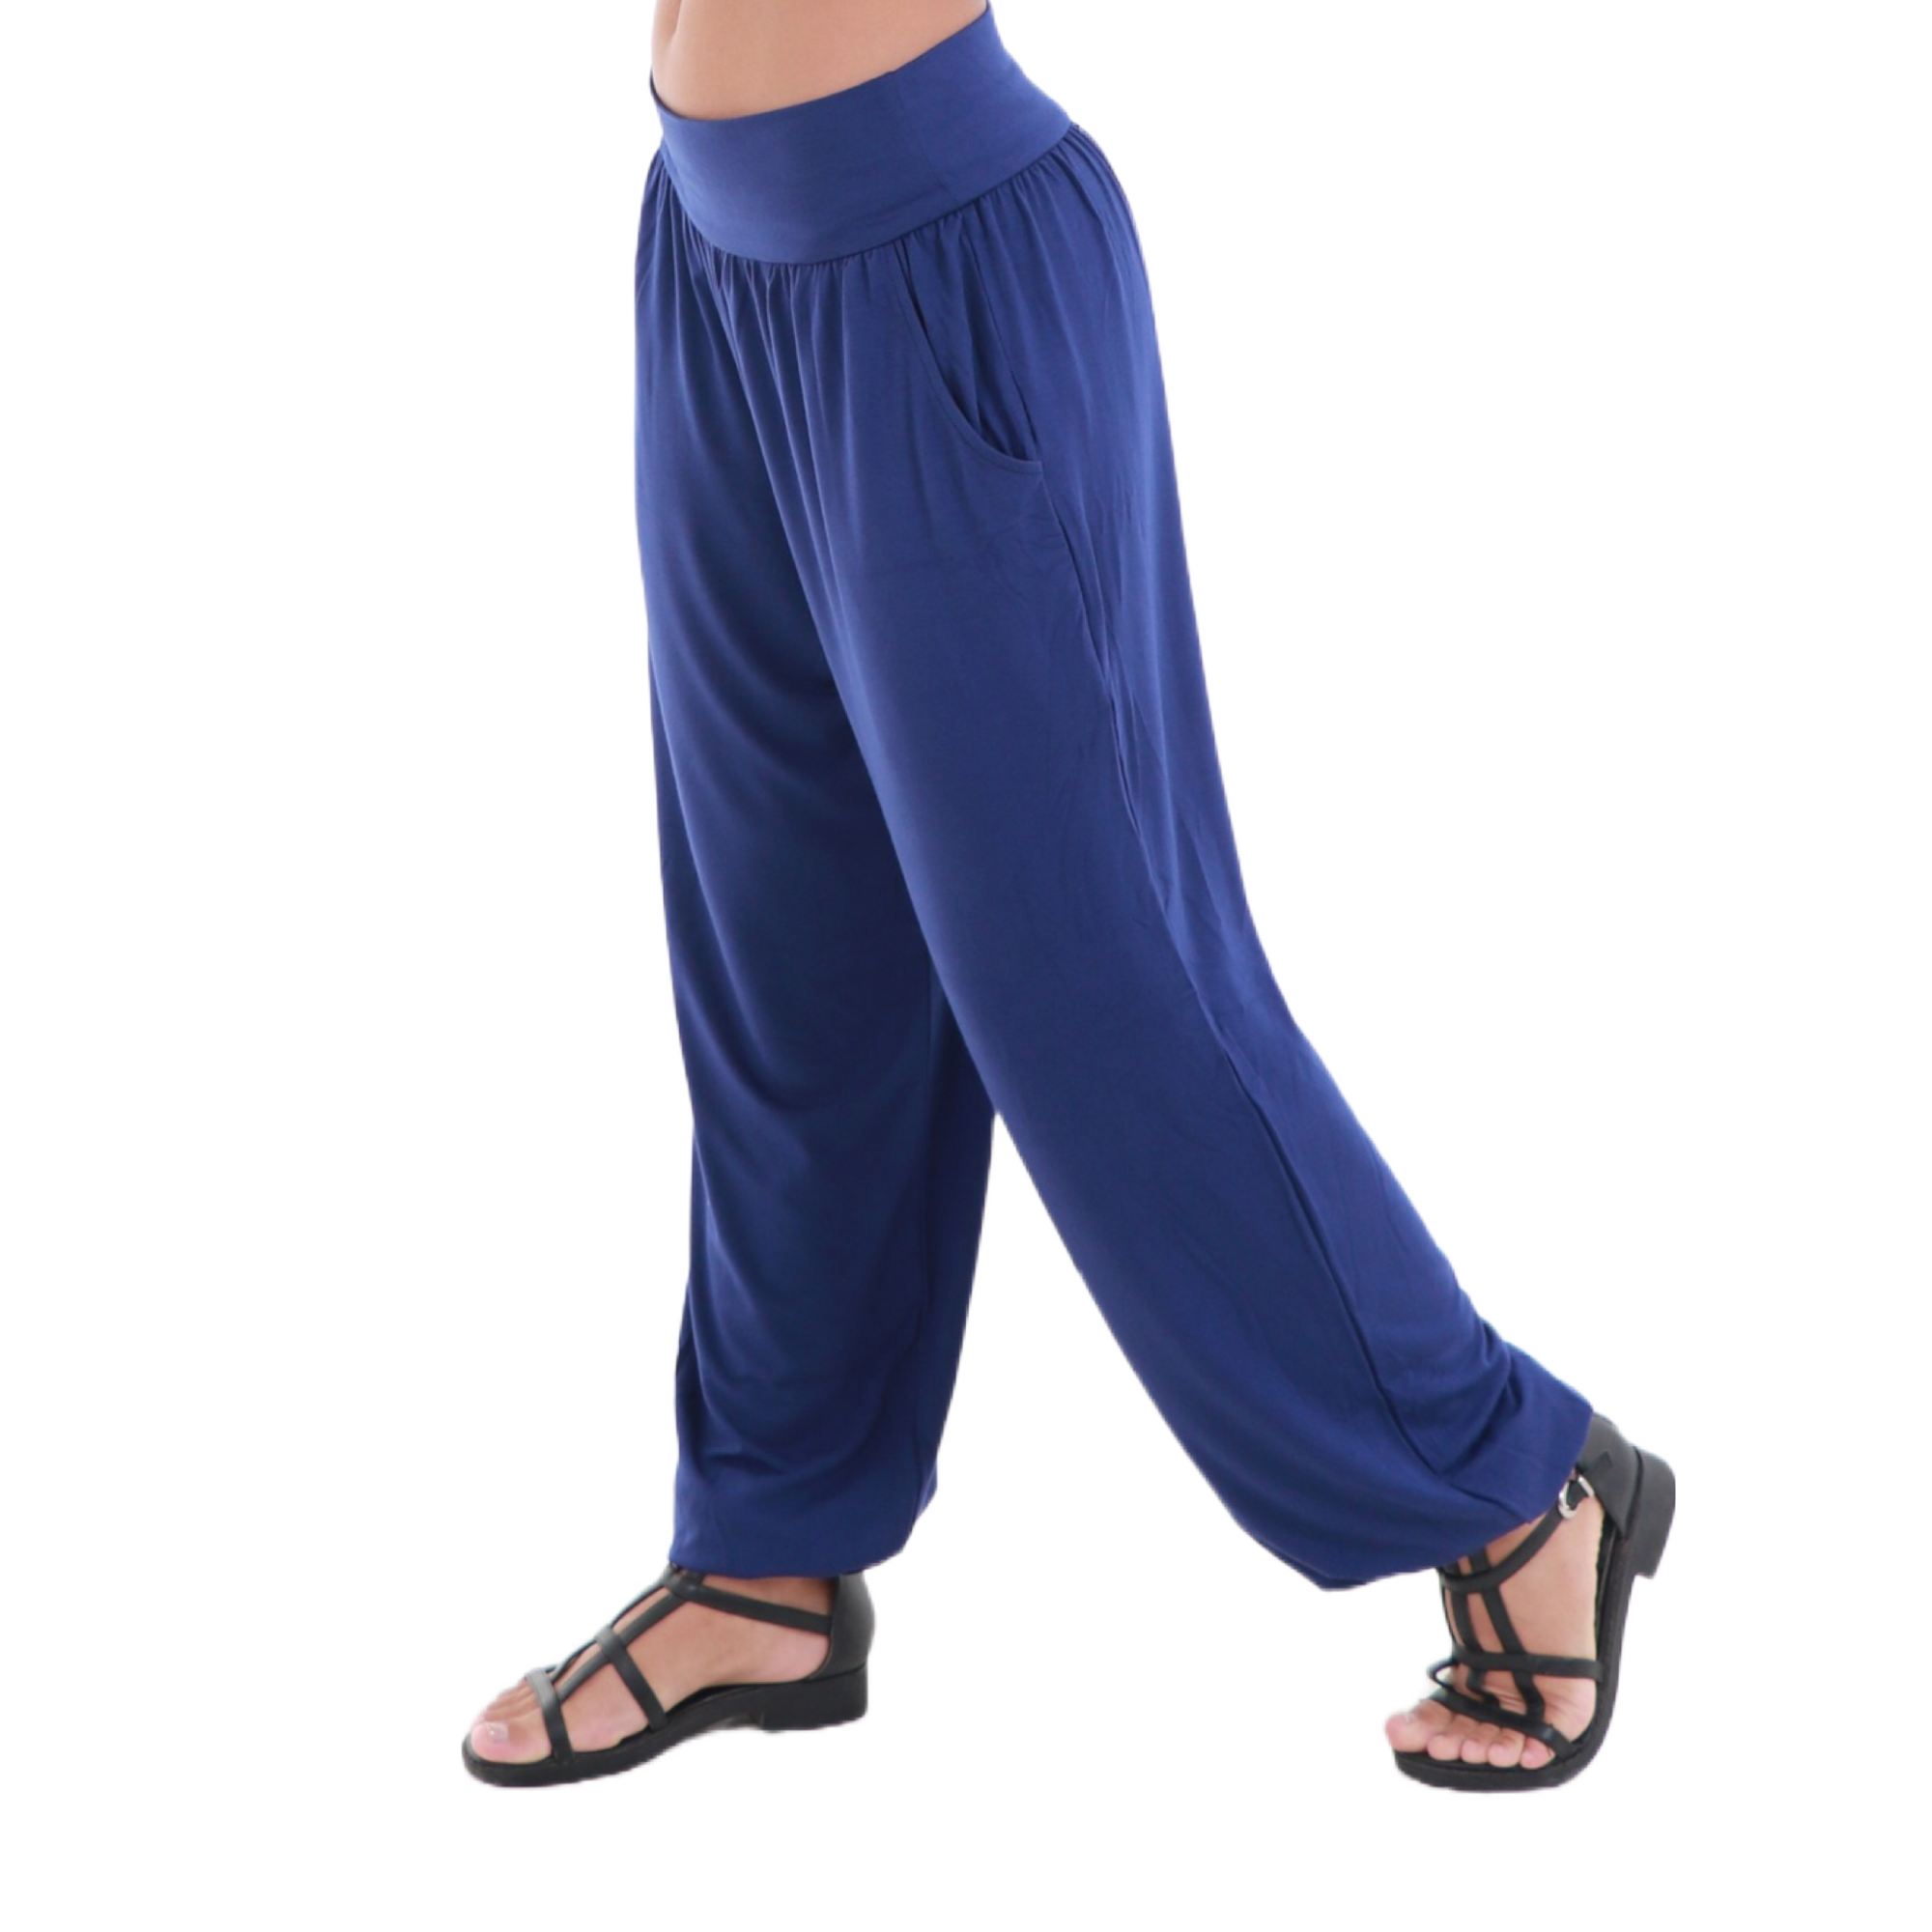 Buy Viku Women's Cotton Harem Pants, Free Size, Brown, Cream at Amazon.in